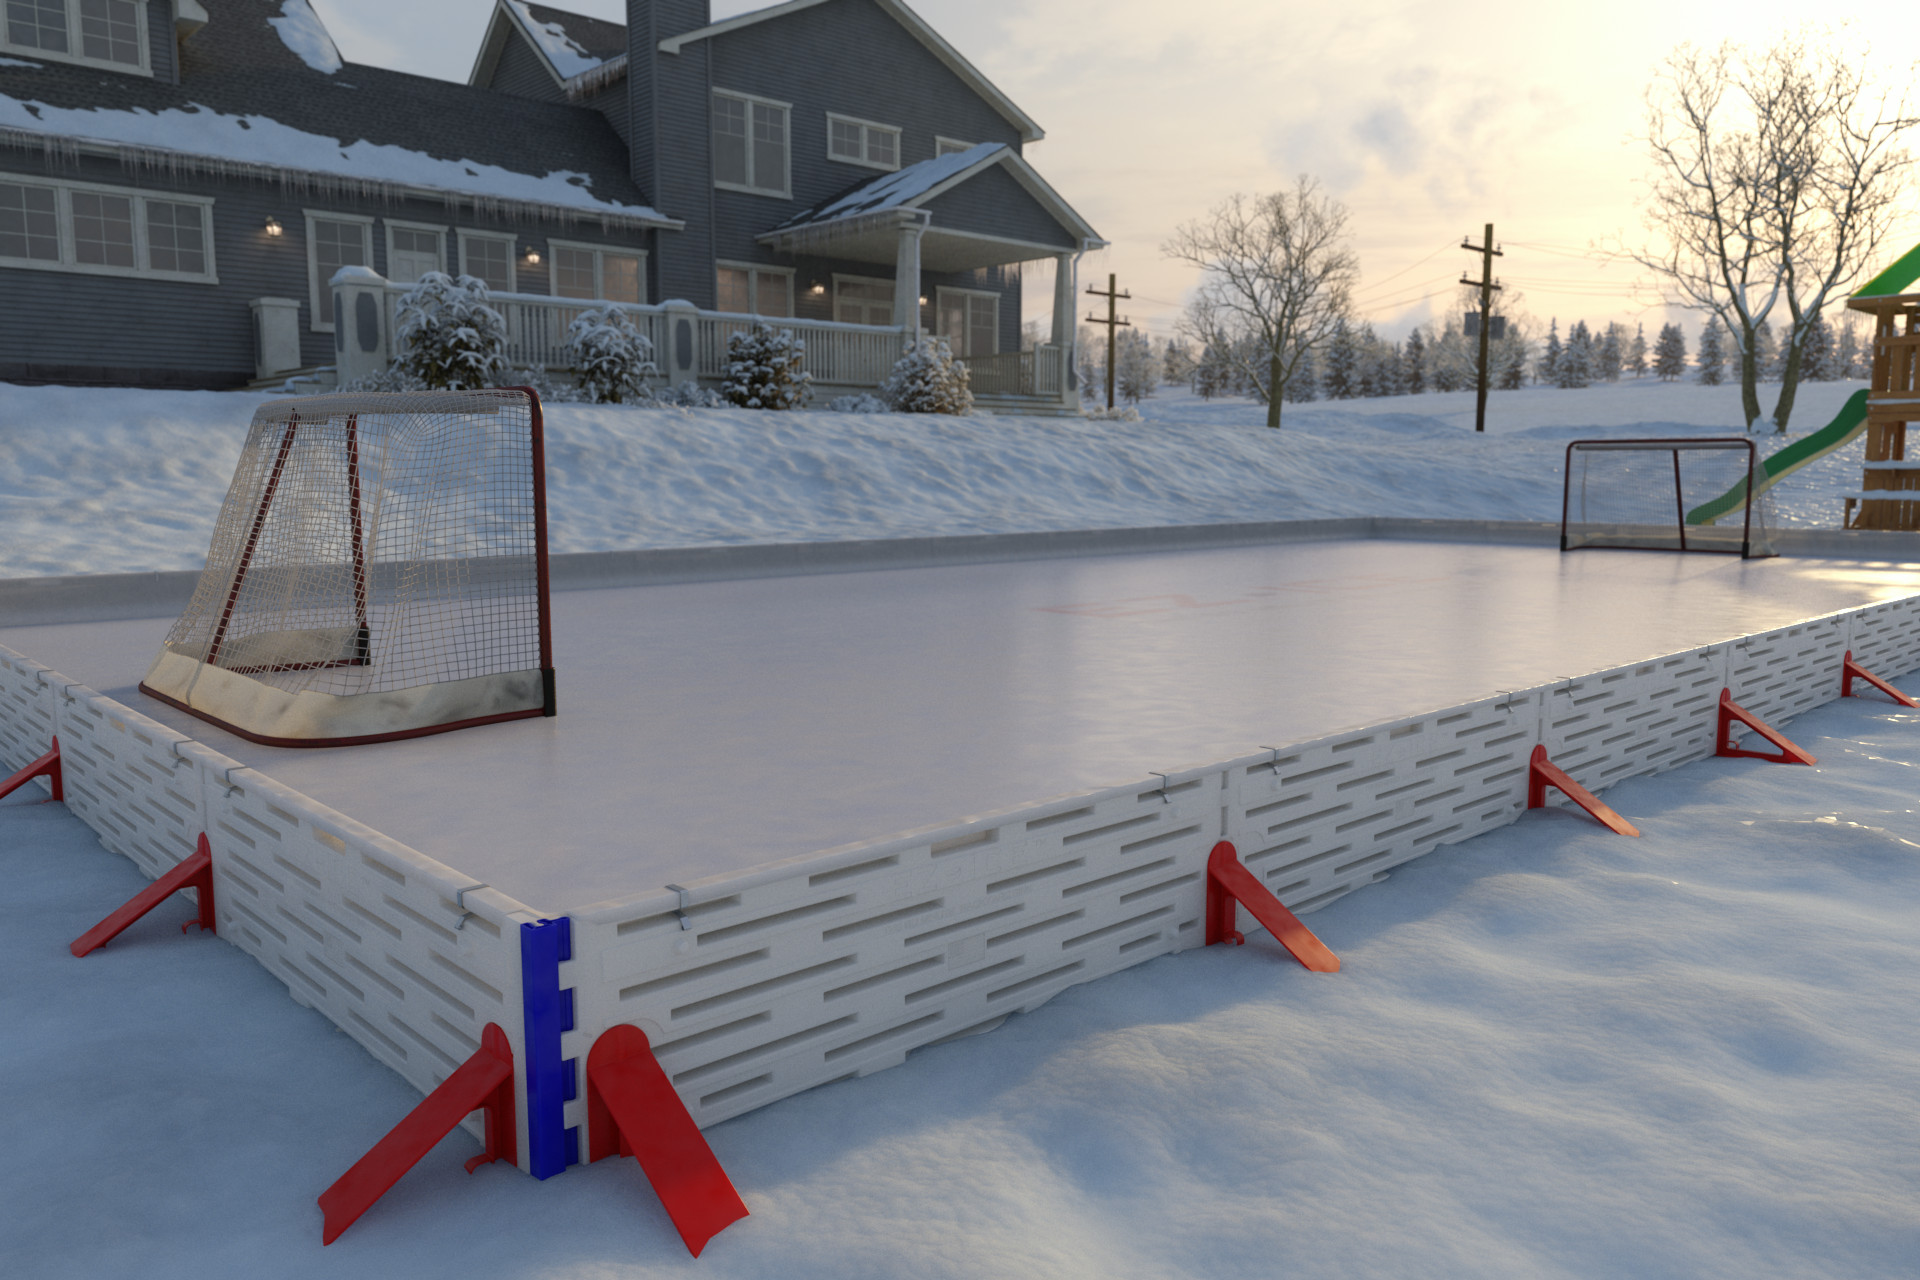 Backyard Hockey Rink Kits
 Backyard Ice Hockey Rinks – Best Home Ice Skating Rink